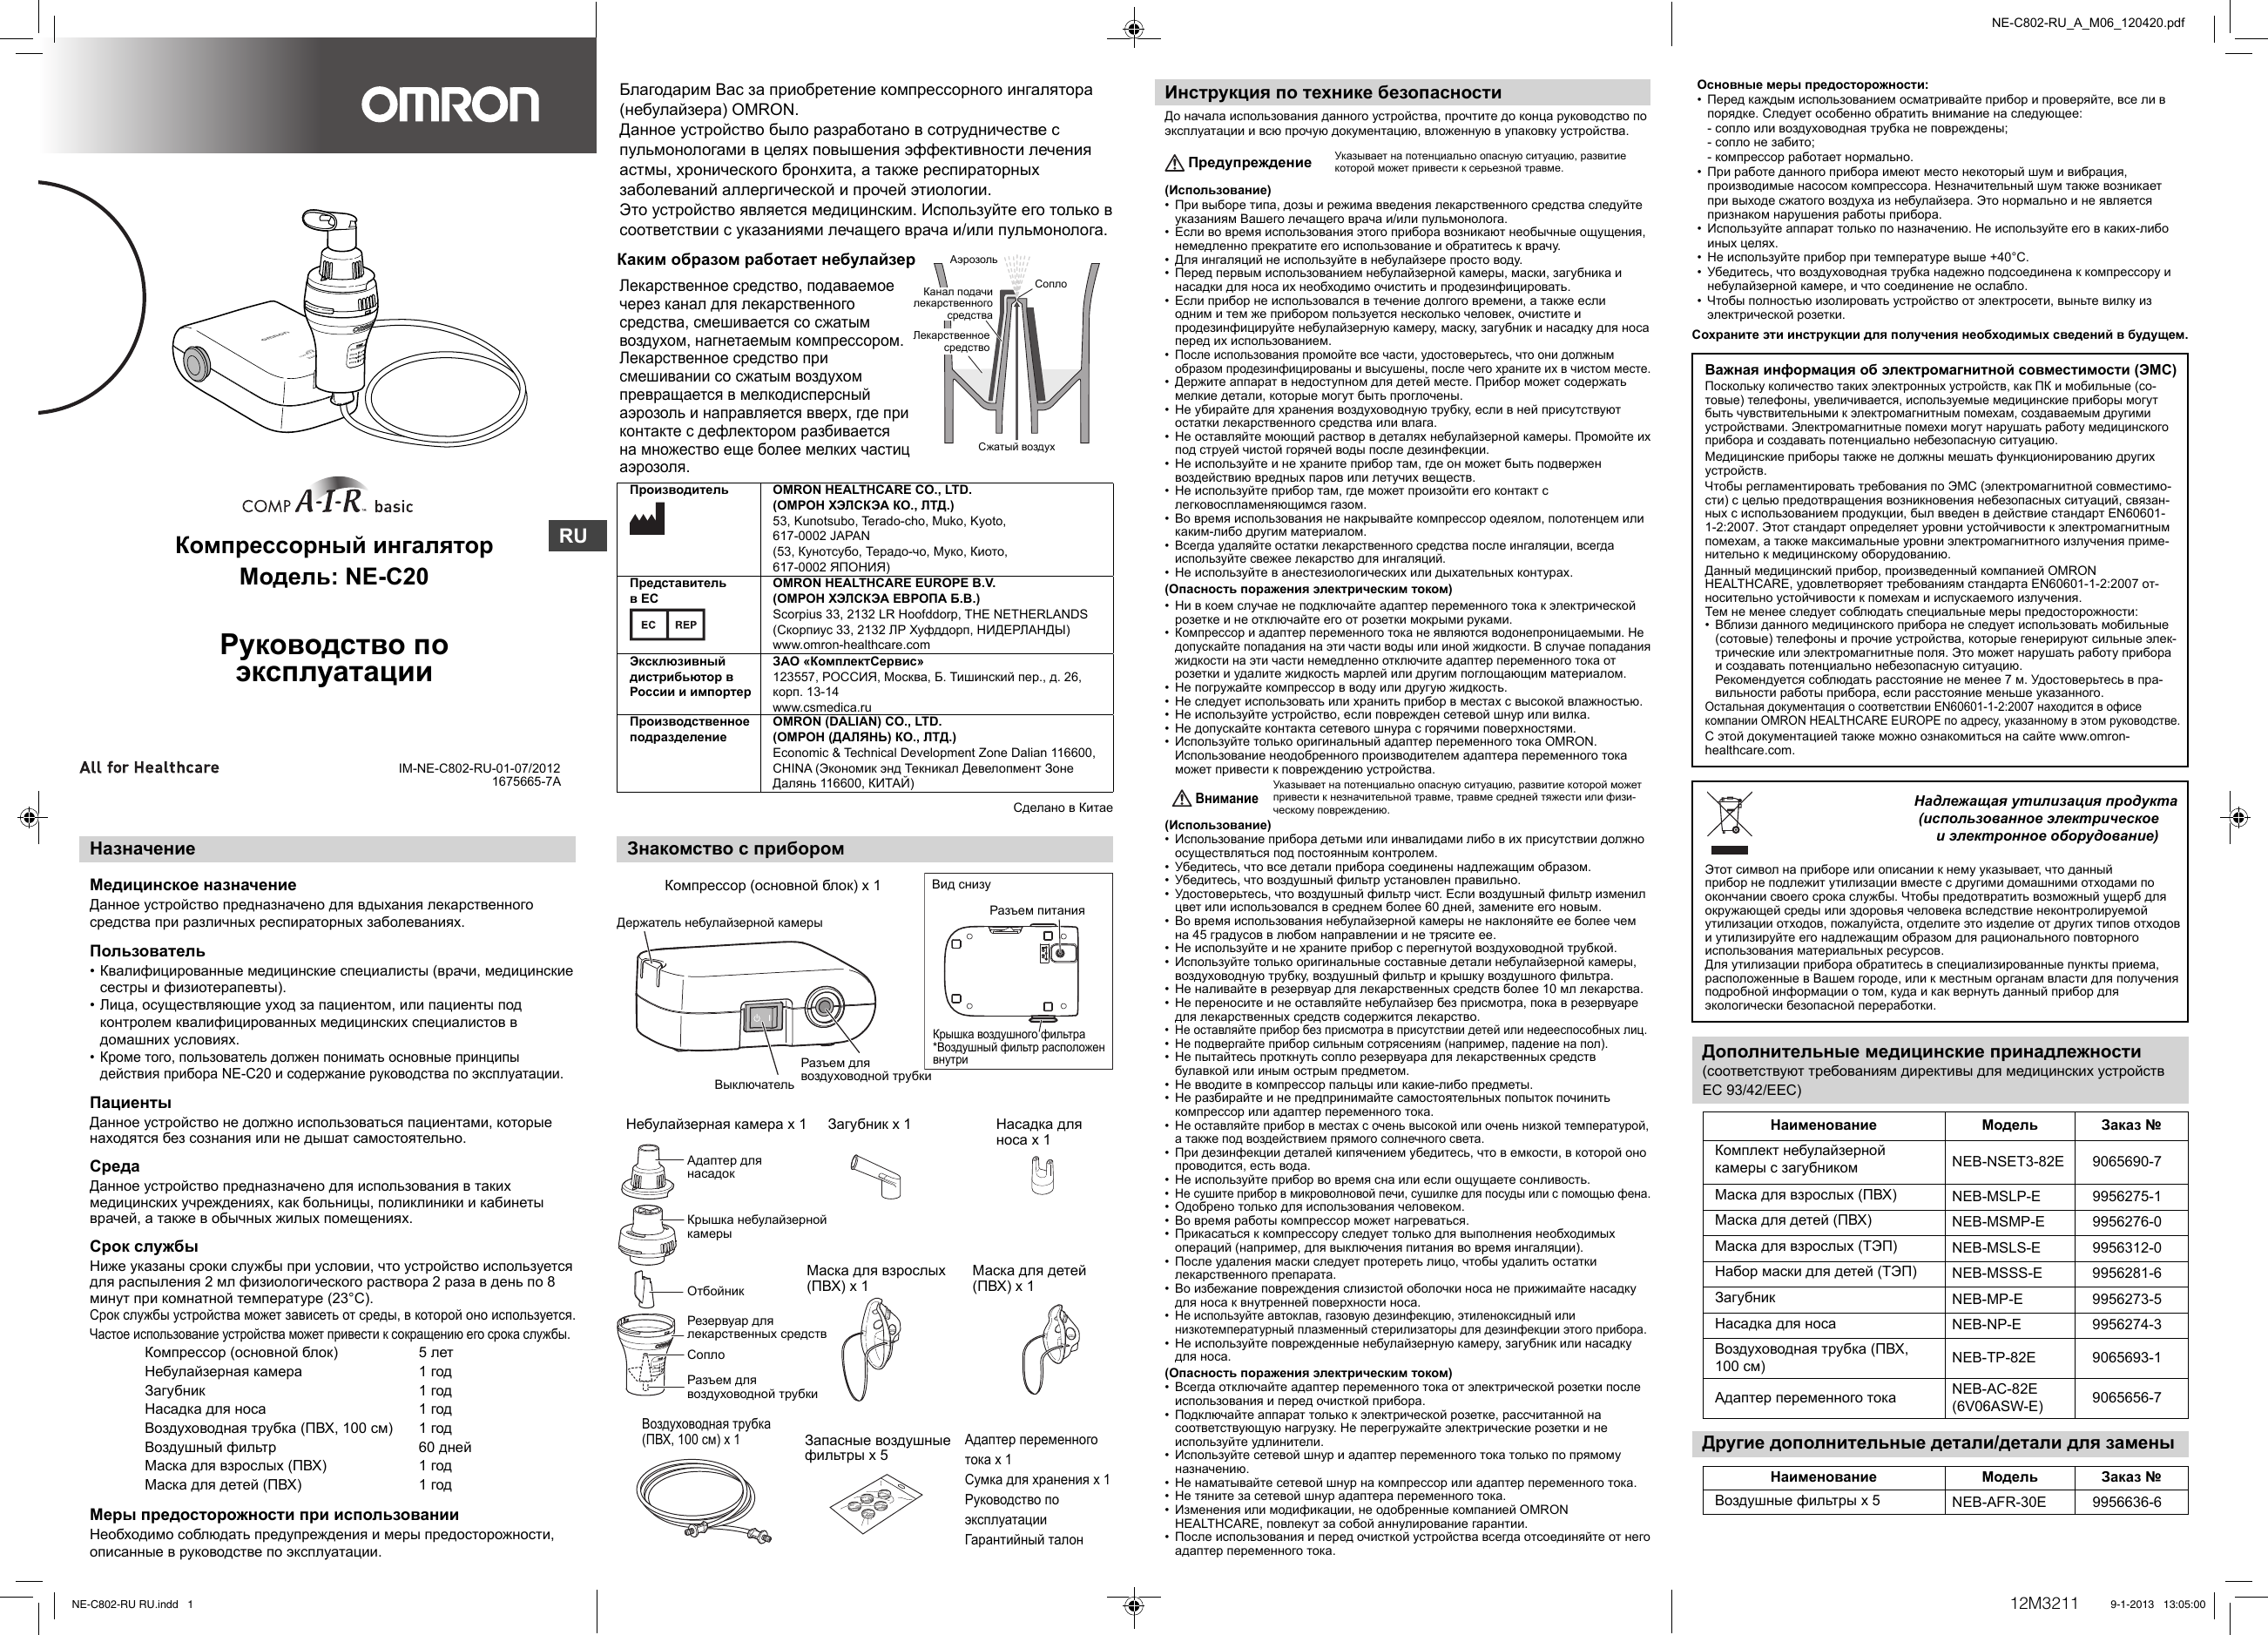 Инструкция по эксплуатации ингалятора omron орал би зубная щетка 500